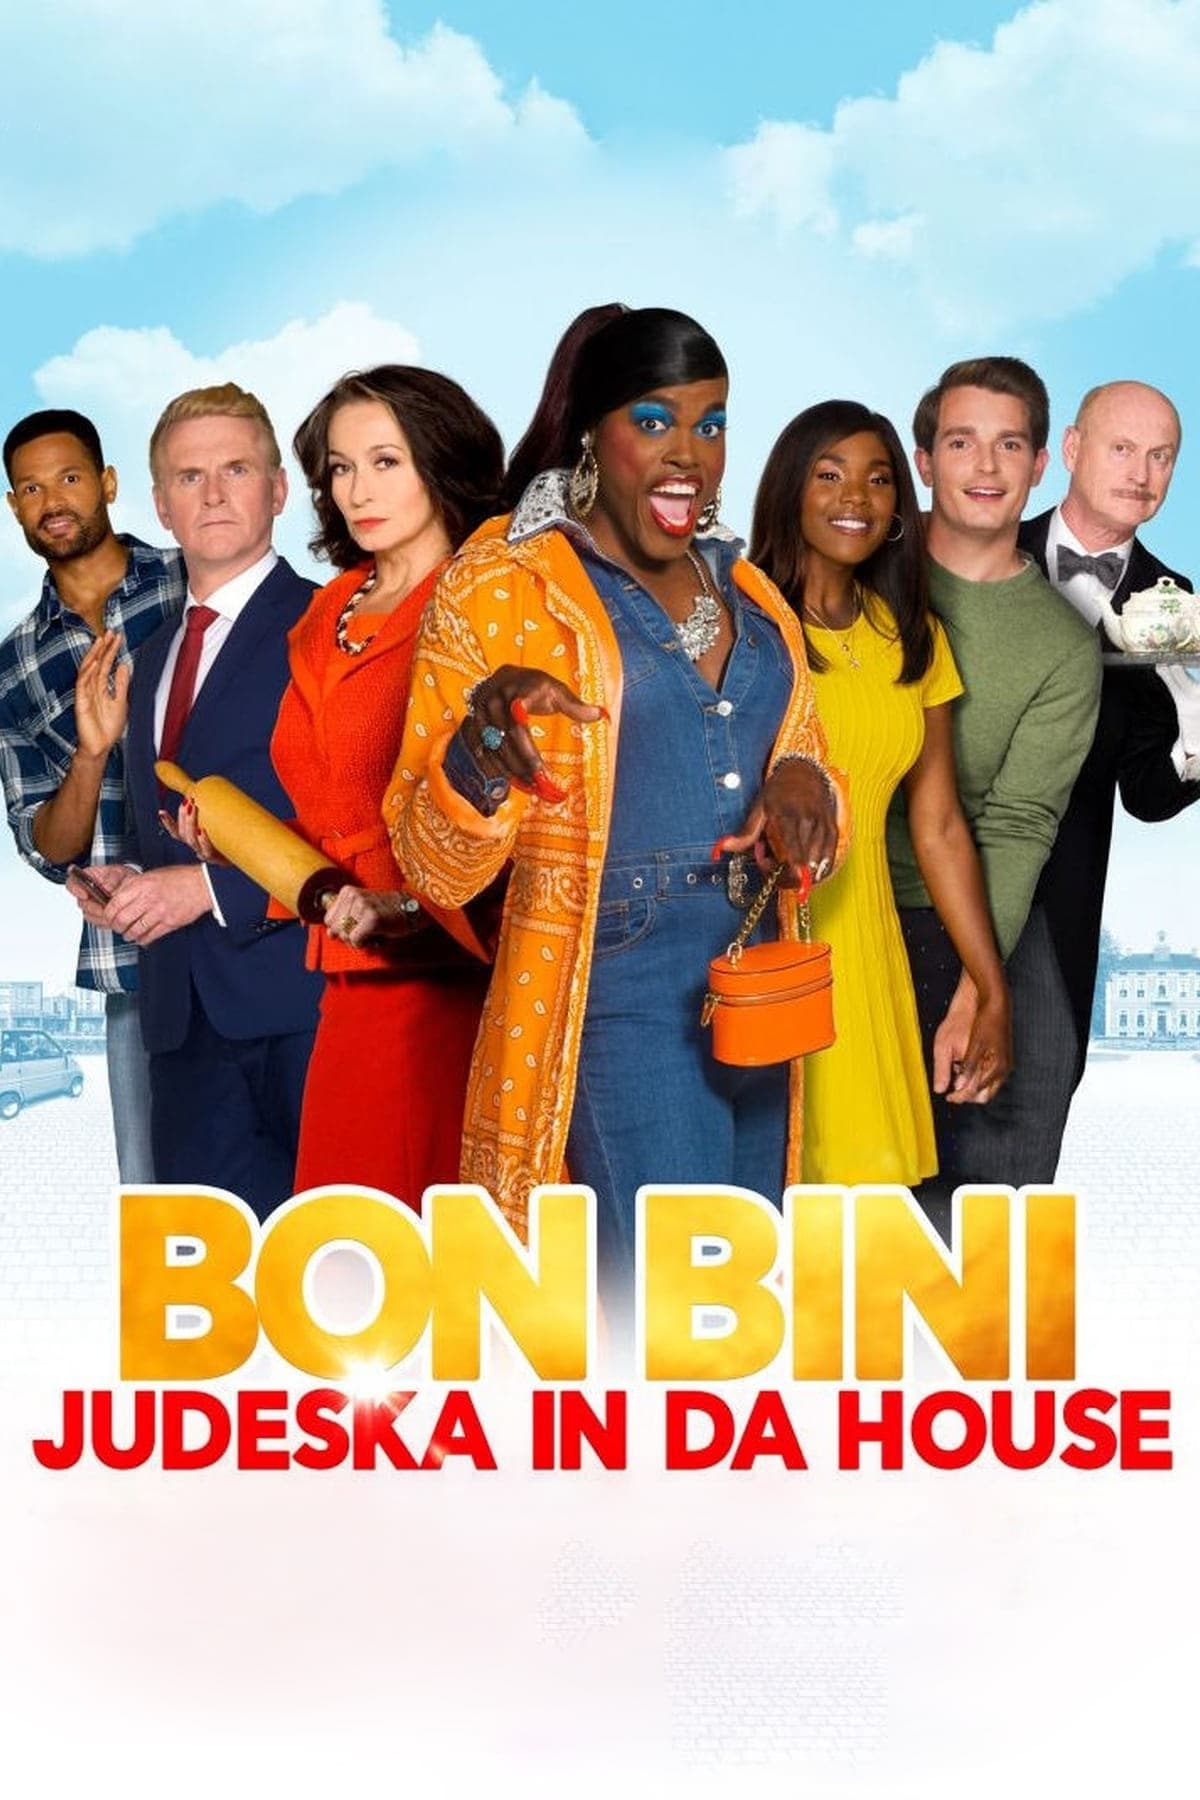 Bon Bini: Judeska in da House